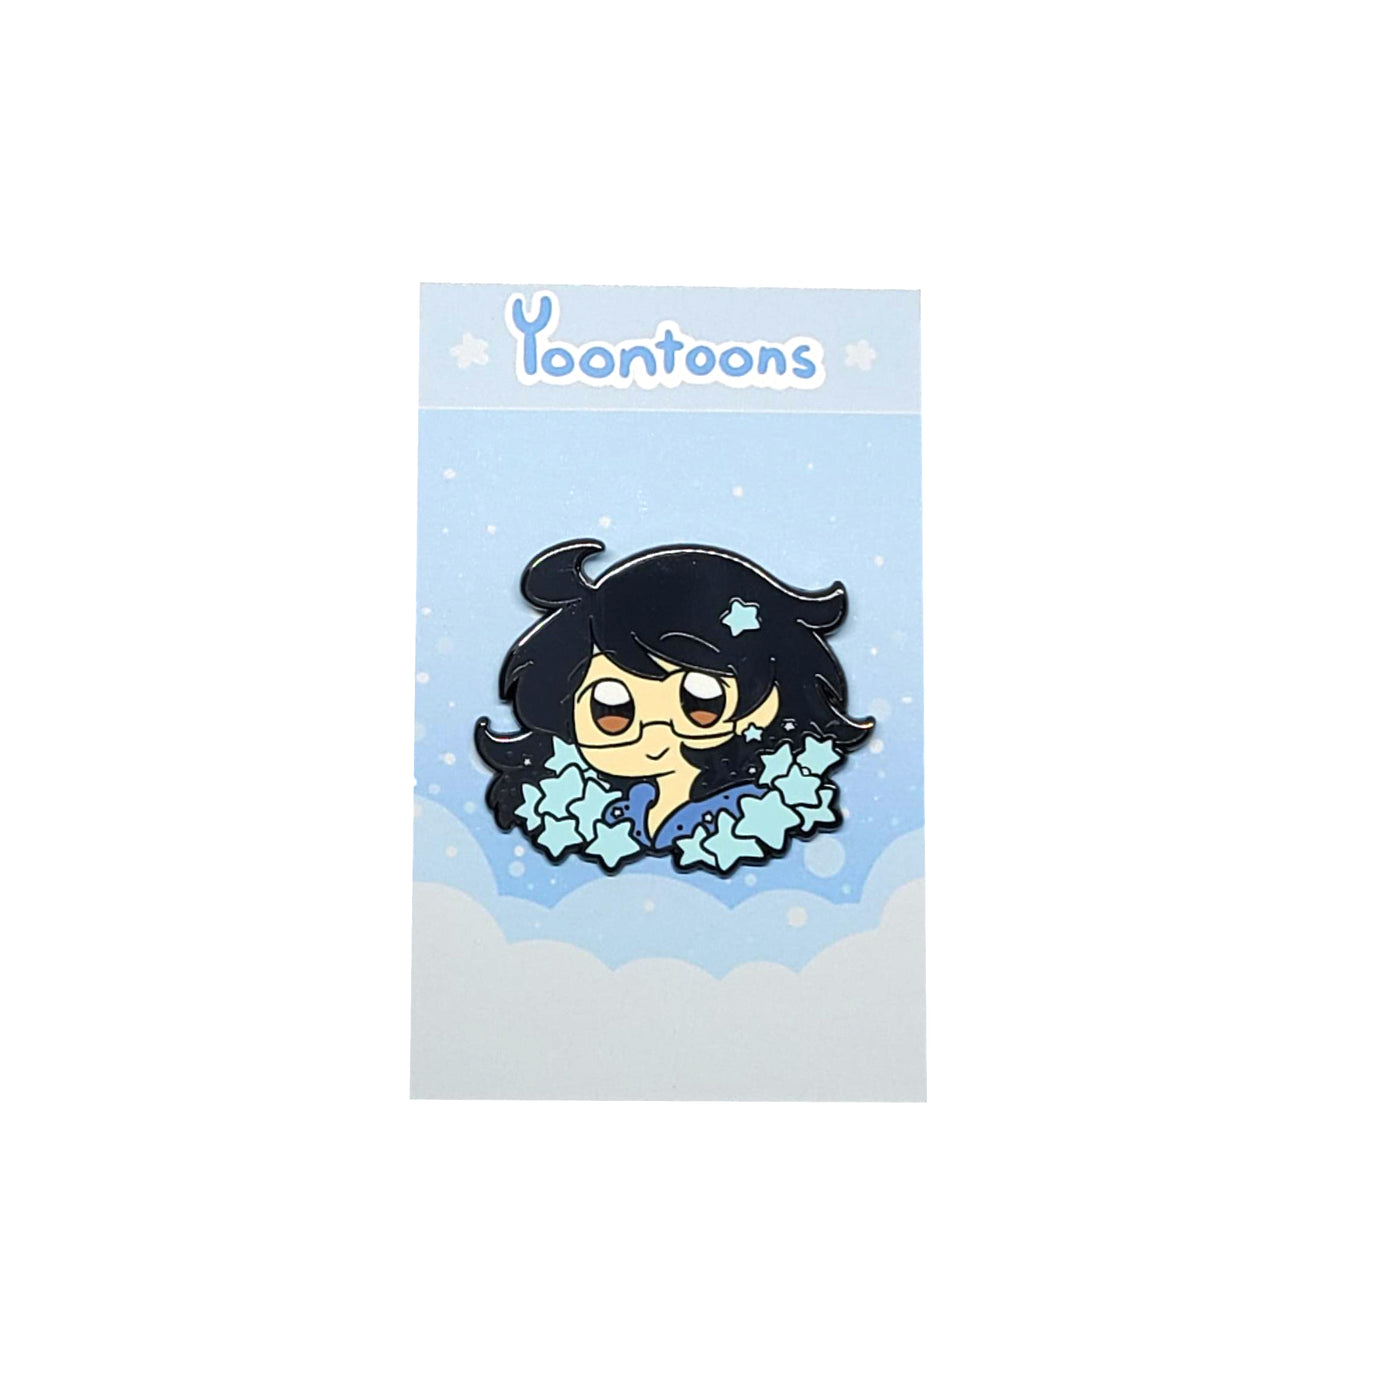 Yoontoons Pin